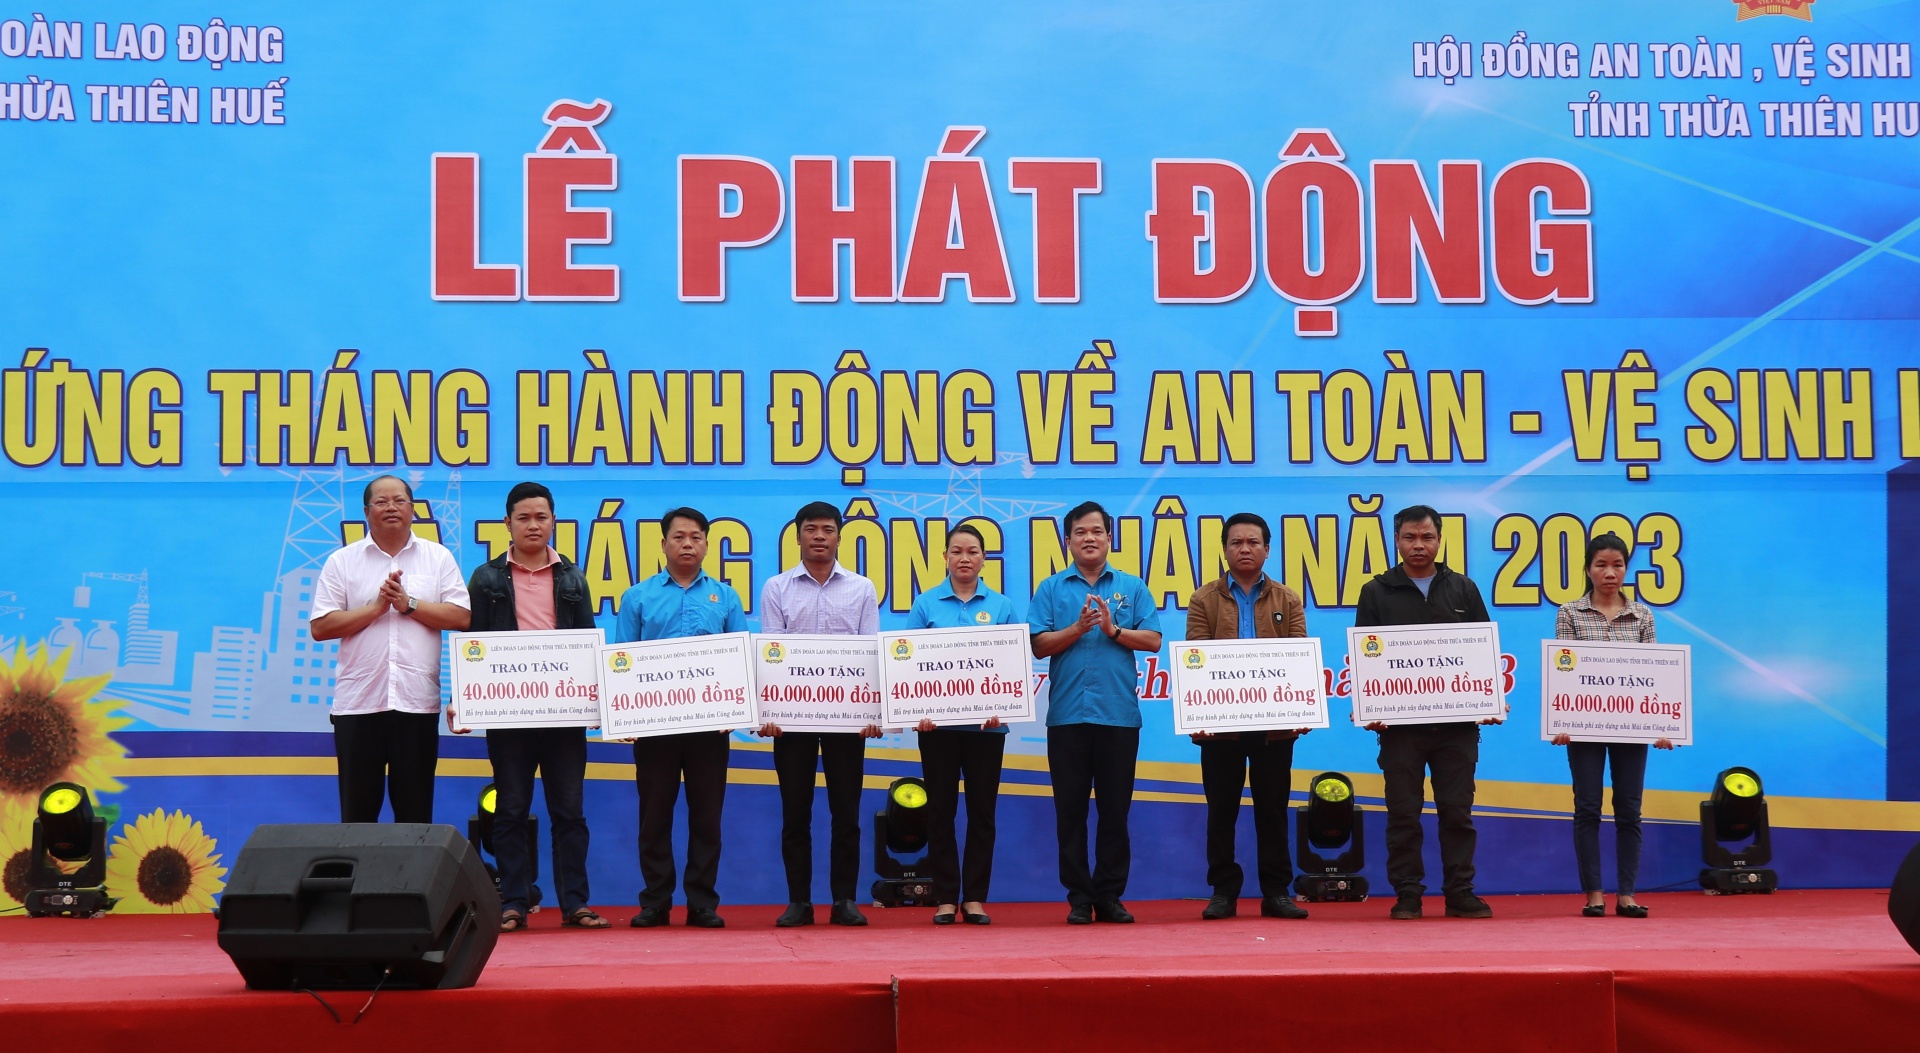 Công đoàn Thừa Thiên Huế: Hơn 11 tỉ đồng chăm lo đoàn viên, NLĐ trong 6 tháng đầu năm